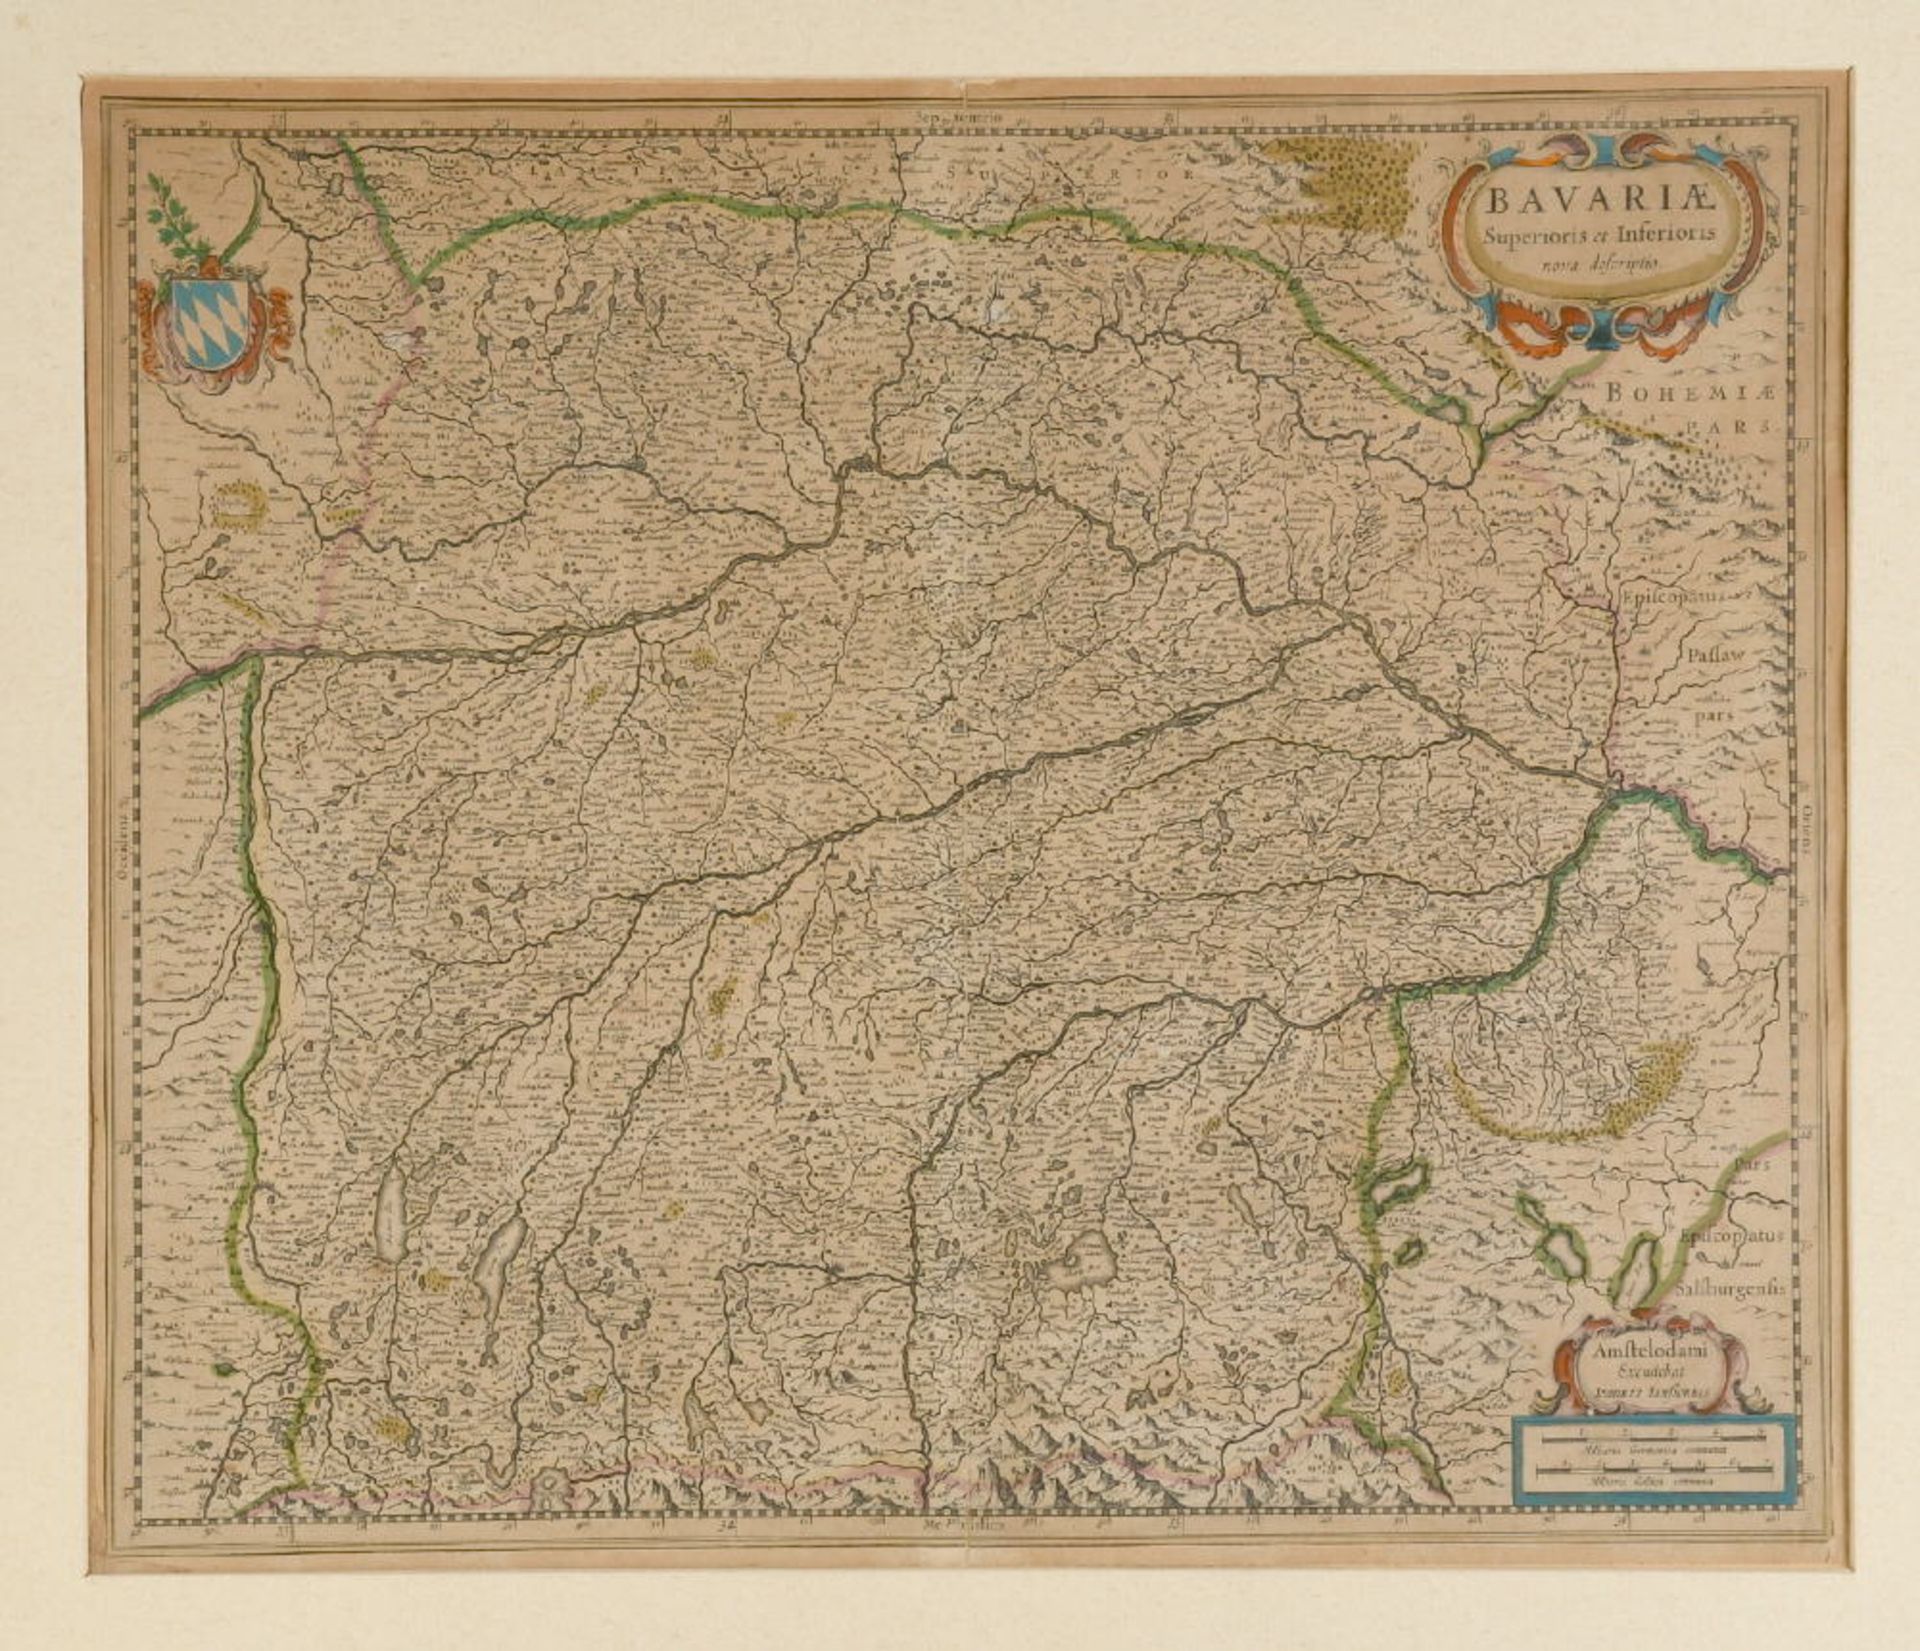 Landkarte "Bavariae Superioris et Inferioris"